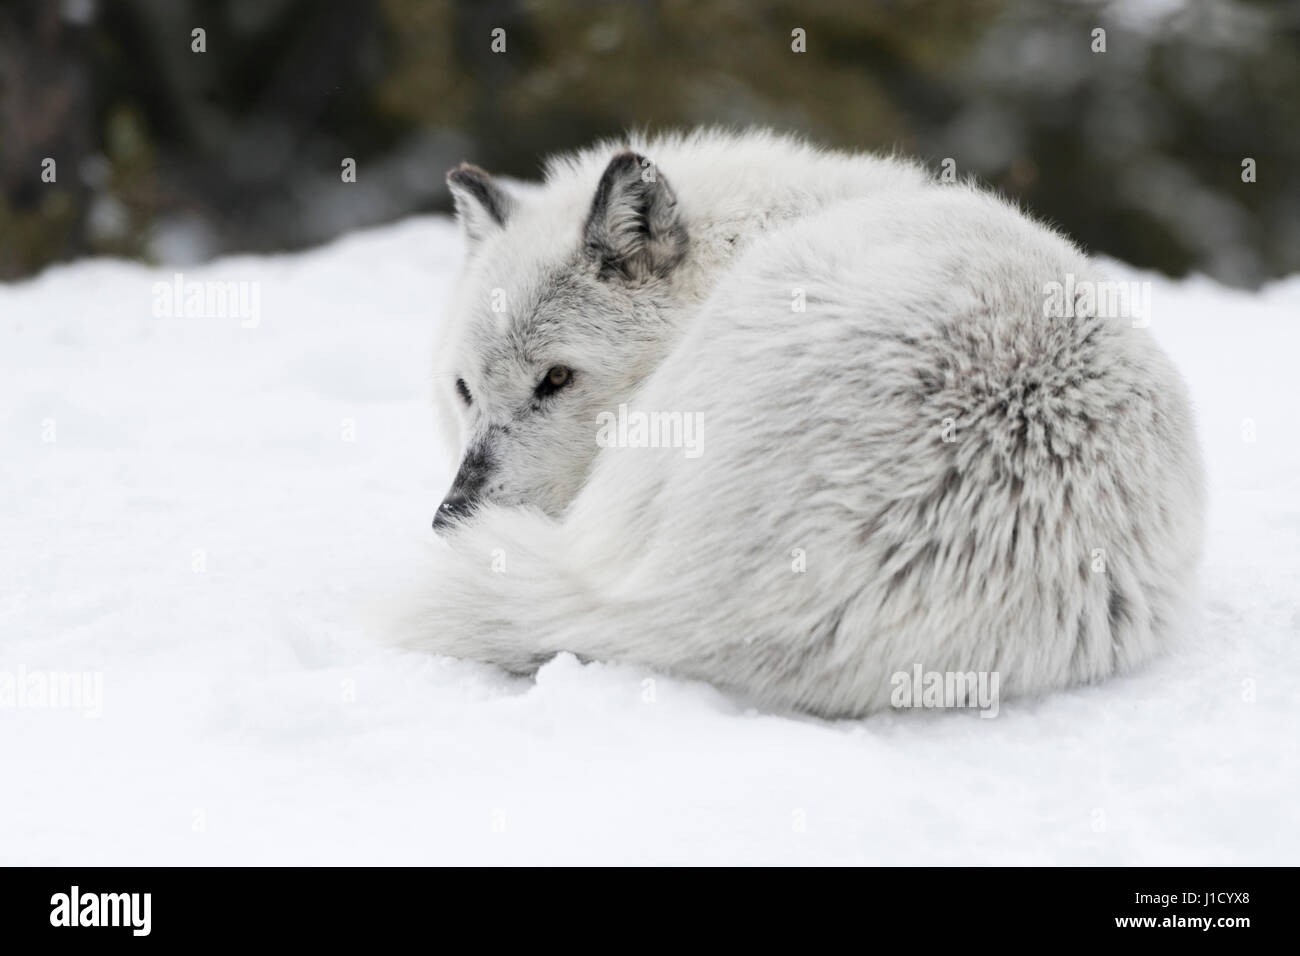 Grauer Wolf / Wolf (Canis Lupus) ruhen, aufgerollt im Schnee liegen, aufmerksam beobachten, Montana, USA. Stockfoto